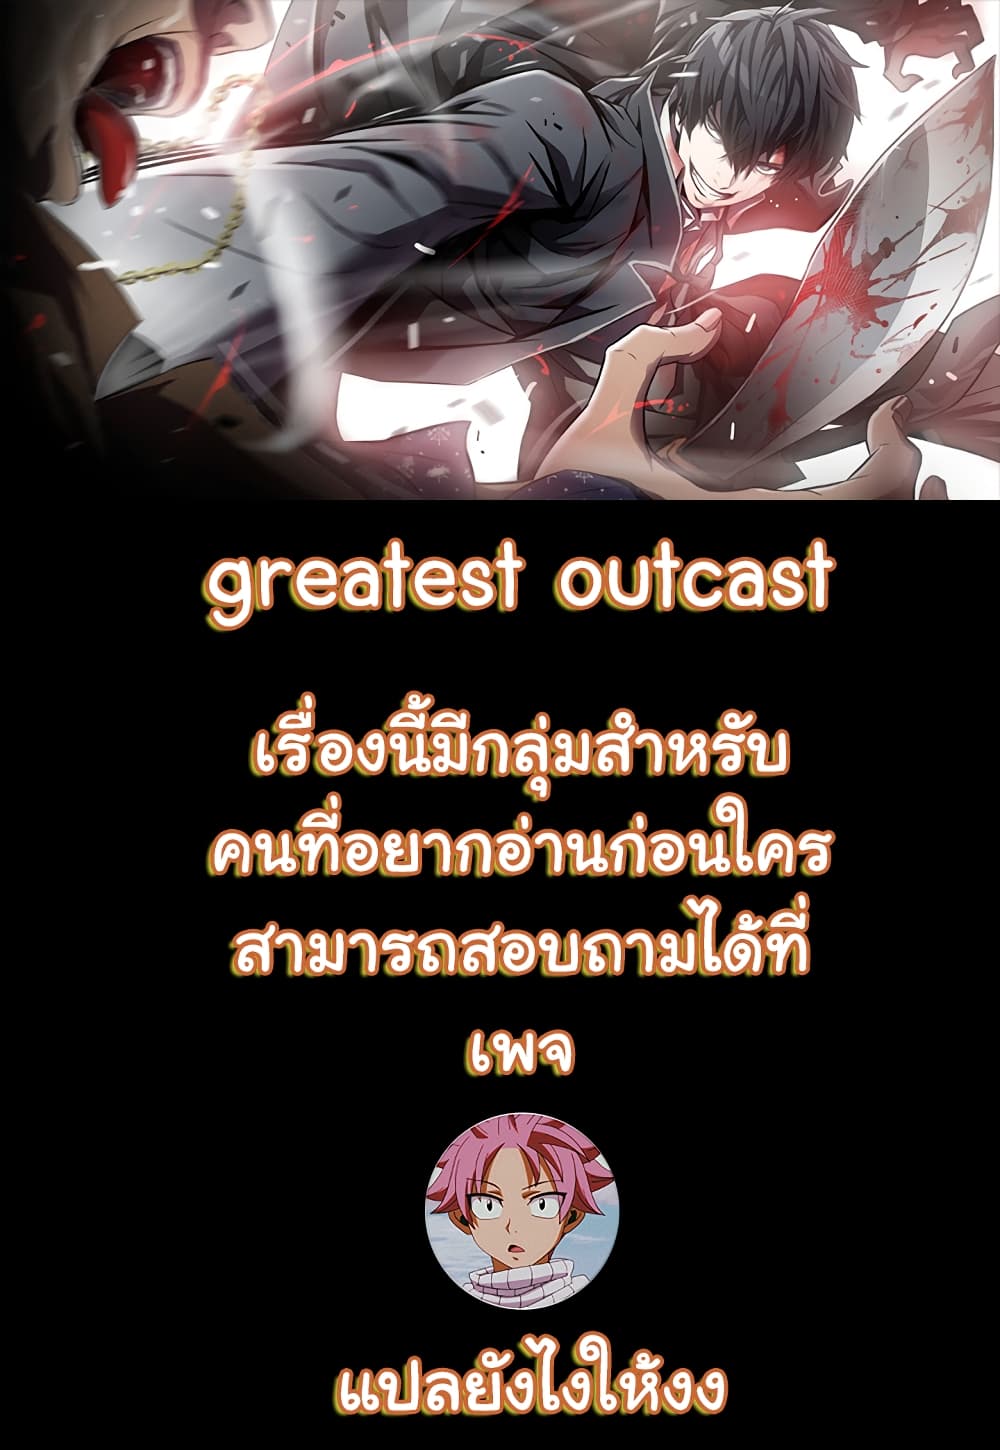 Greatest Outcast 6-6